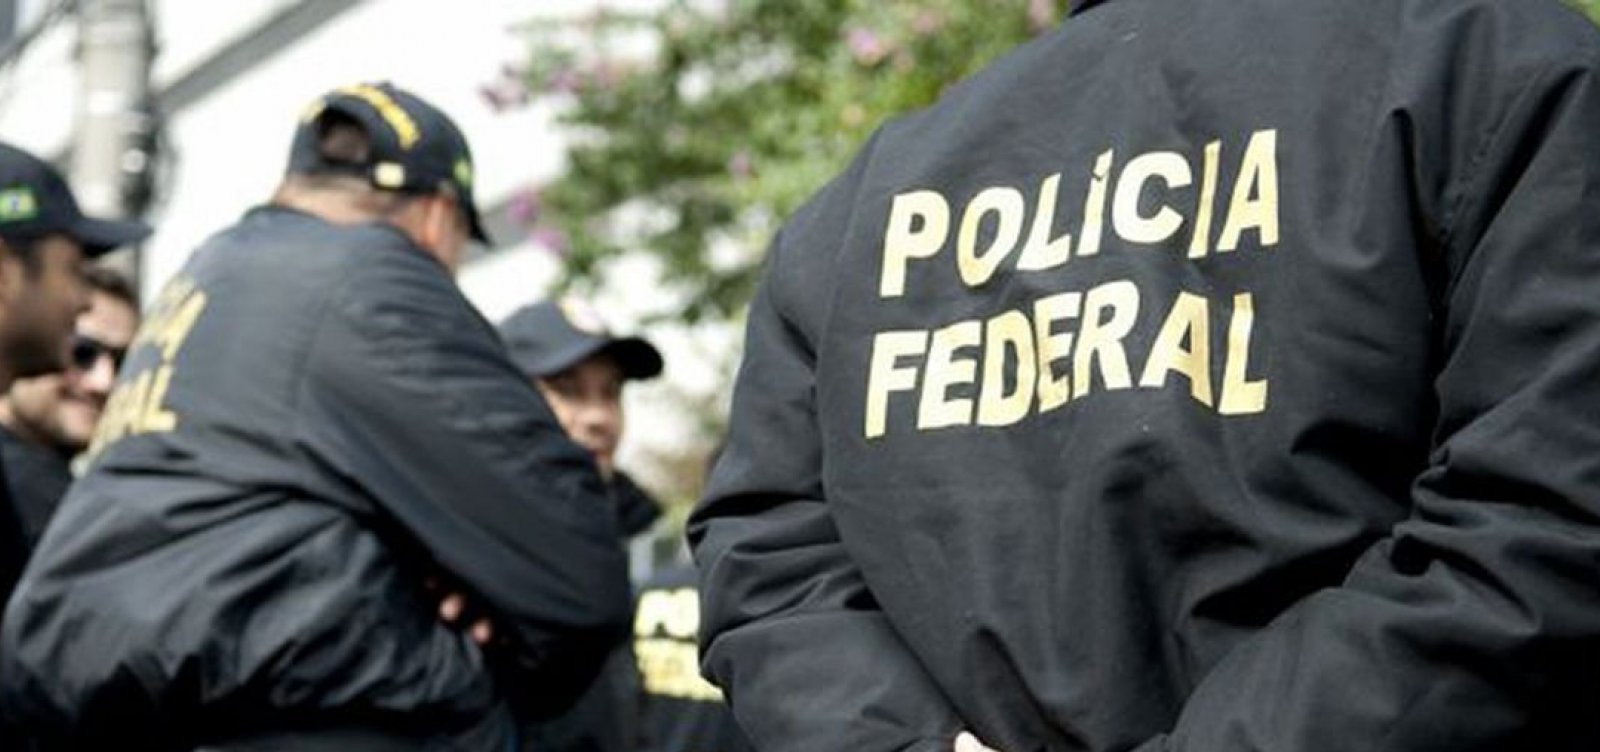 Polícia Federal cumpre mandados em operação contra fraudes em programa habitacional